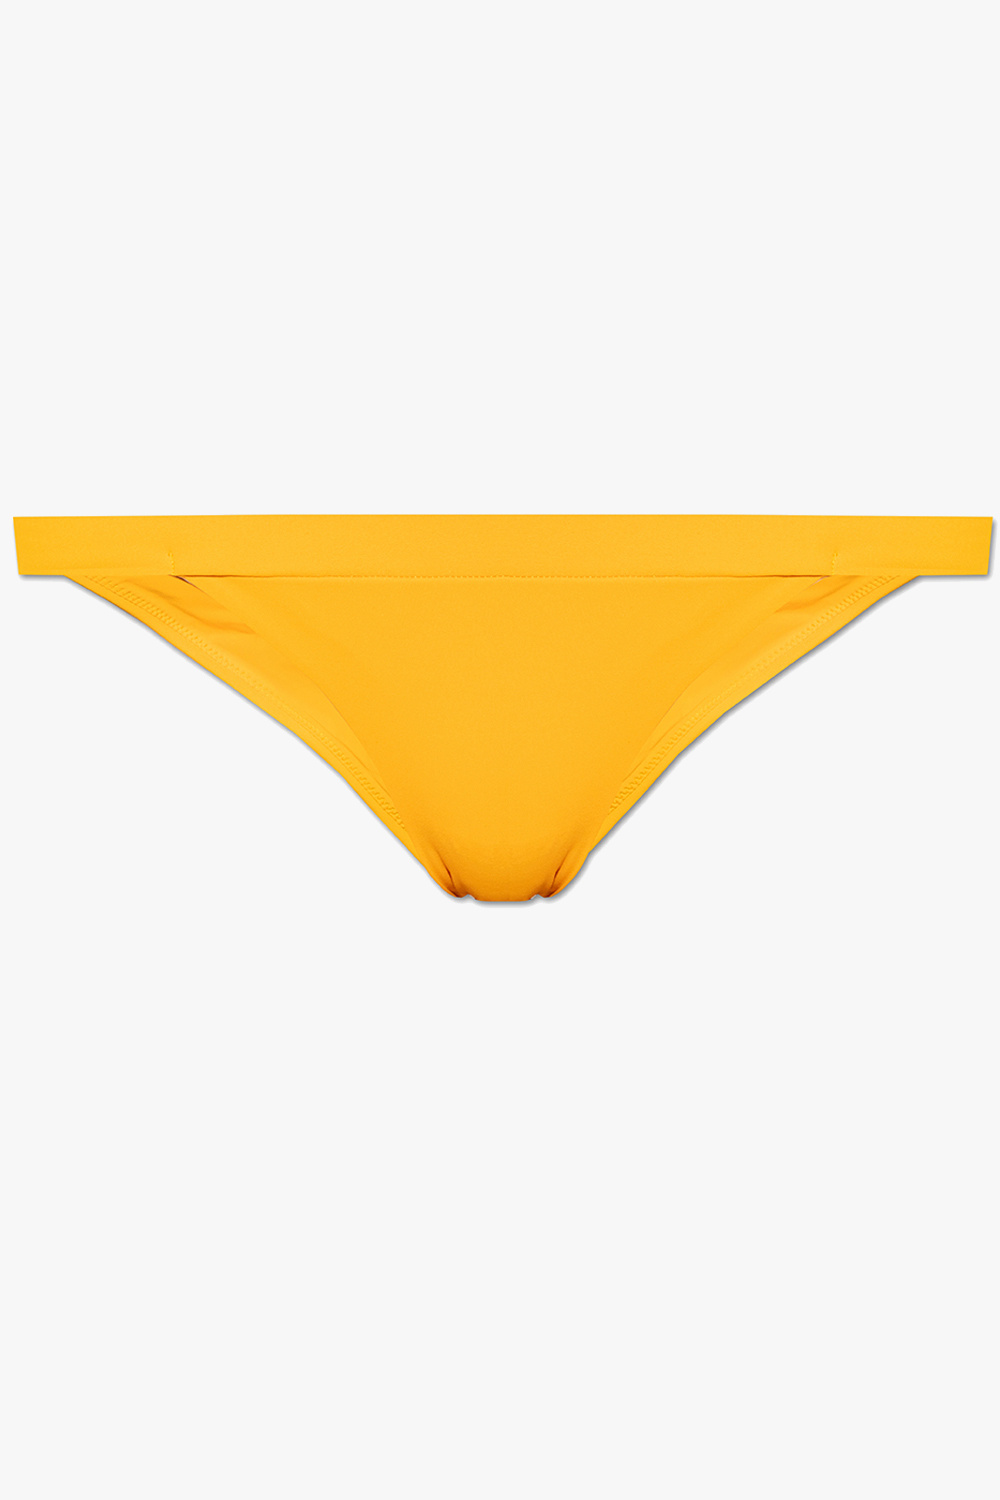 Nanushka ‘Mavis’ swimsuit bottom